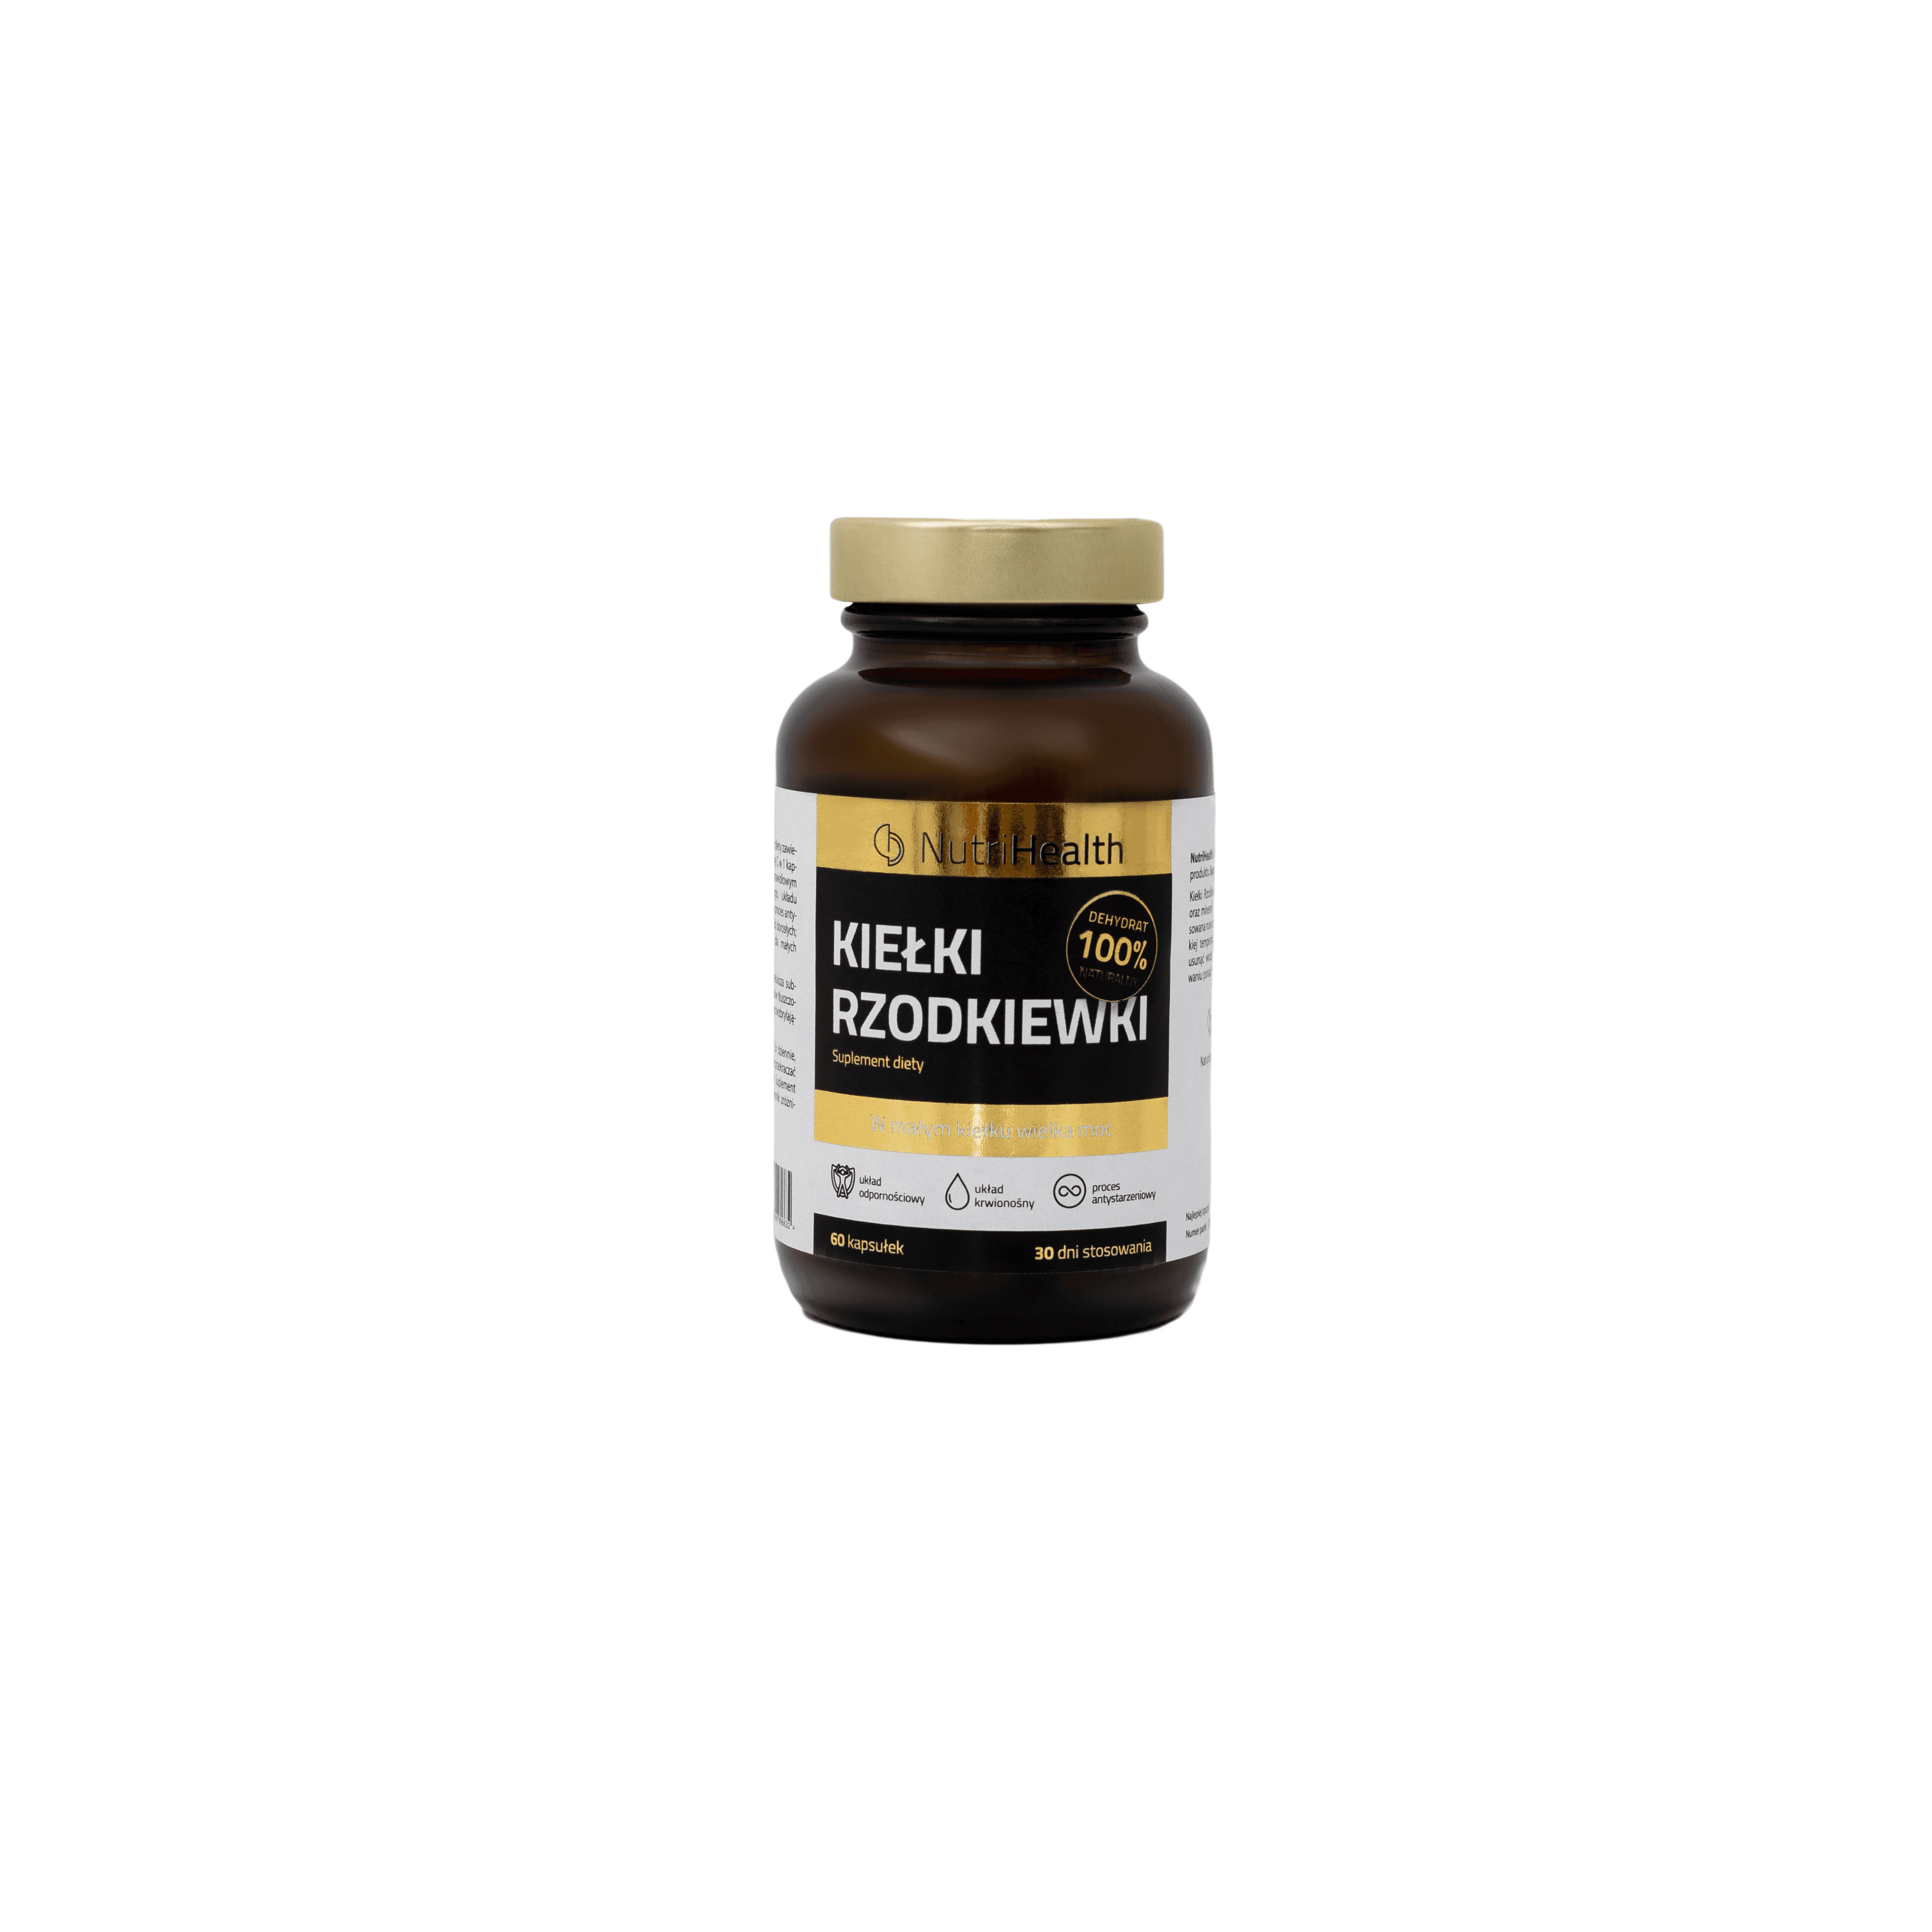 NutriHealth Nutritional Supplement Cucurbits, (60 capsules) 100% original